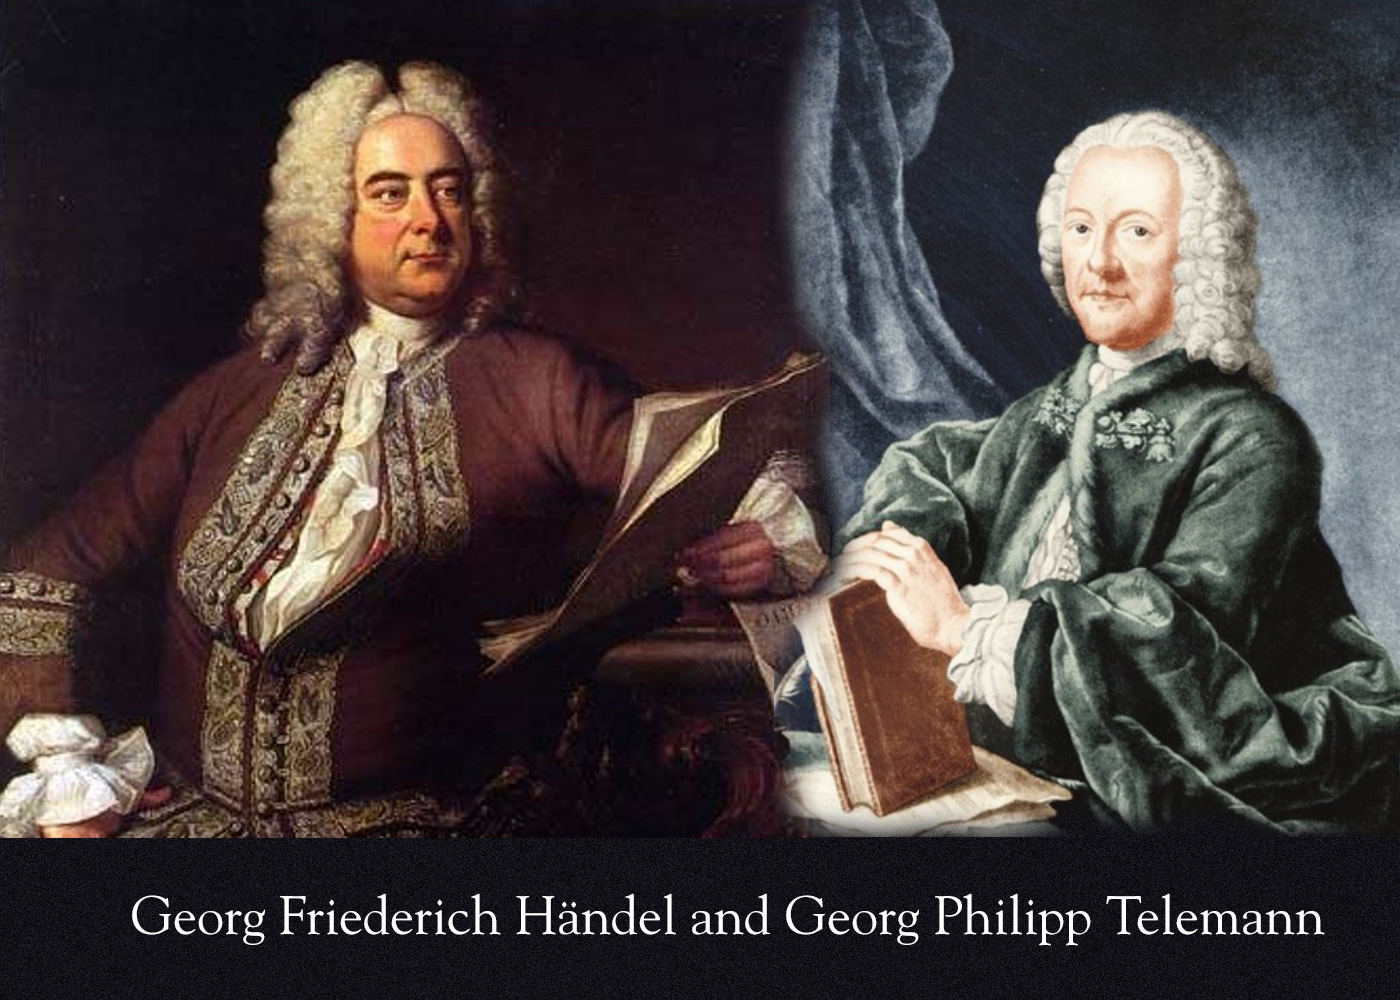 Handel and Telemann lifelong friends